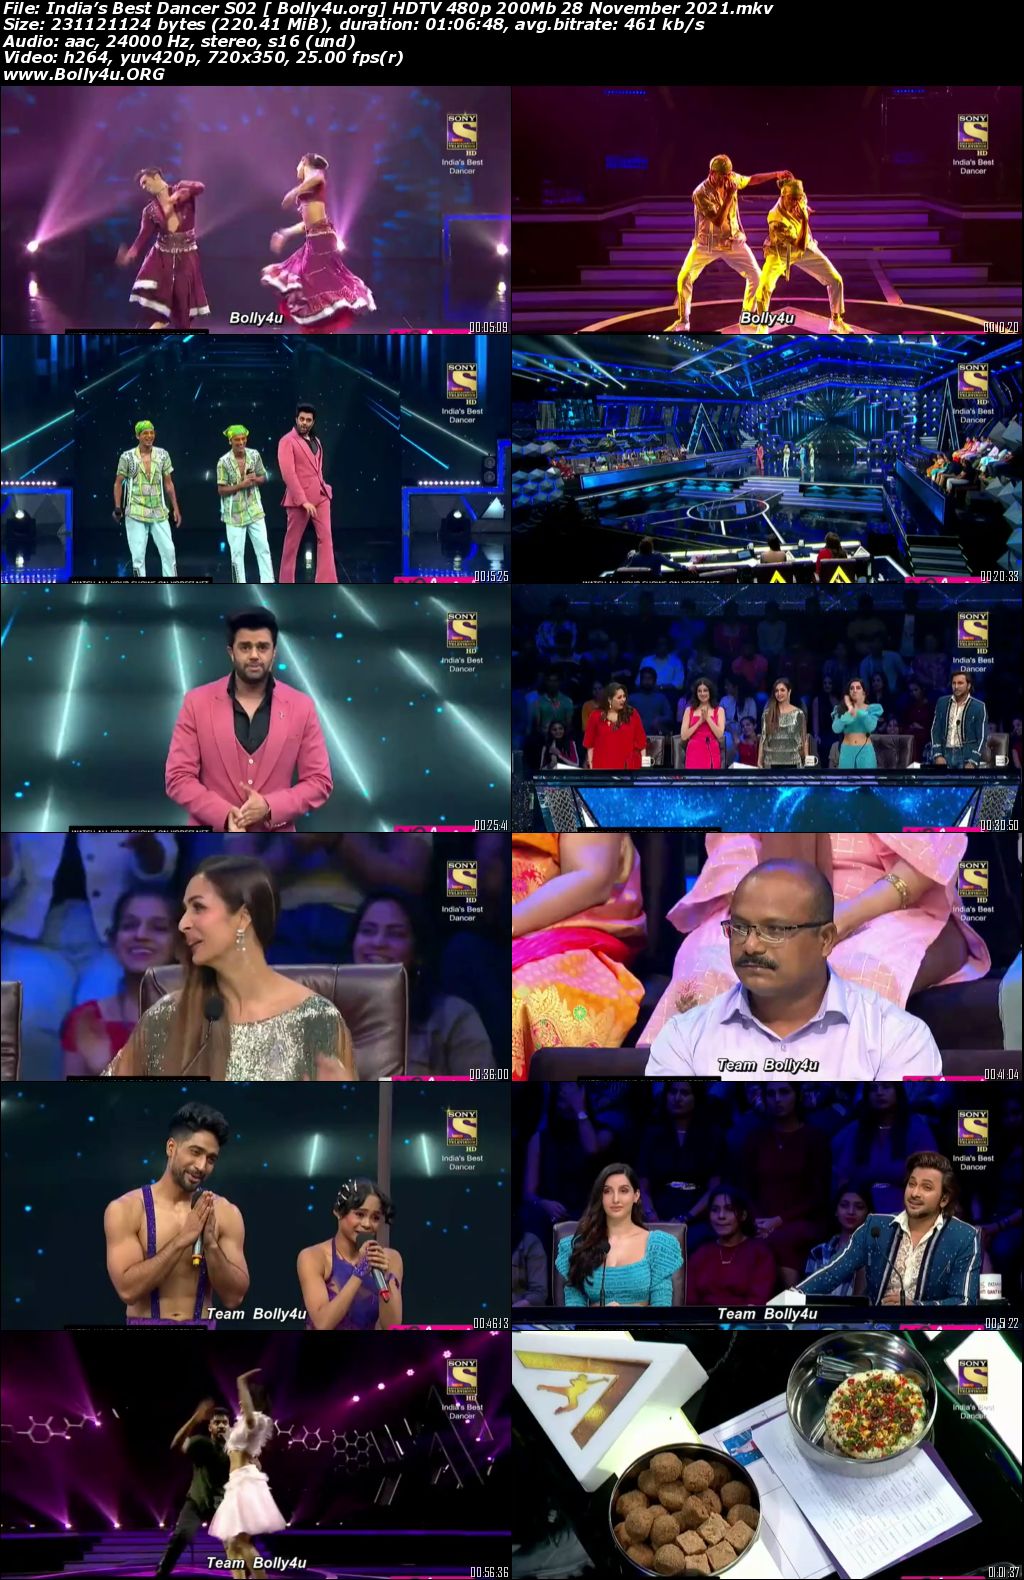 Indias Best Dancer S02 HDTV 480p 200Mb 28 November 2021 Download